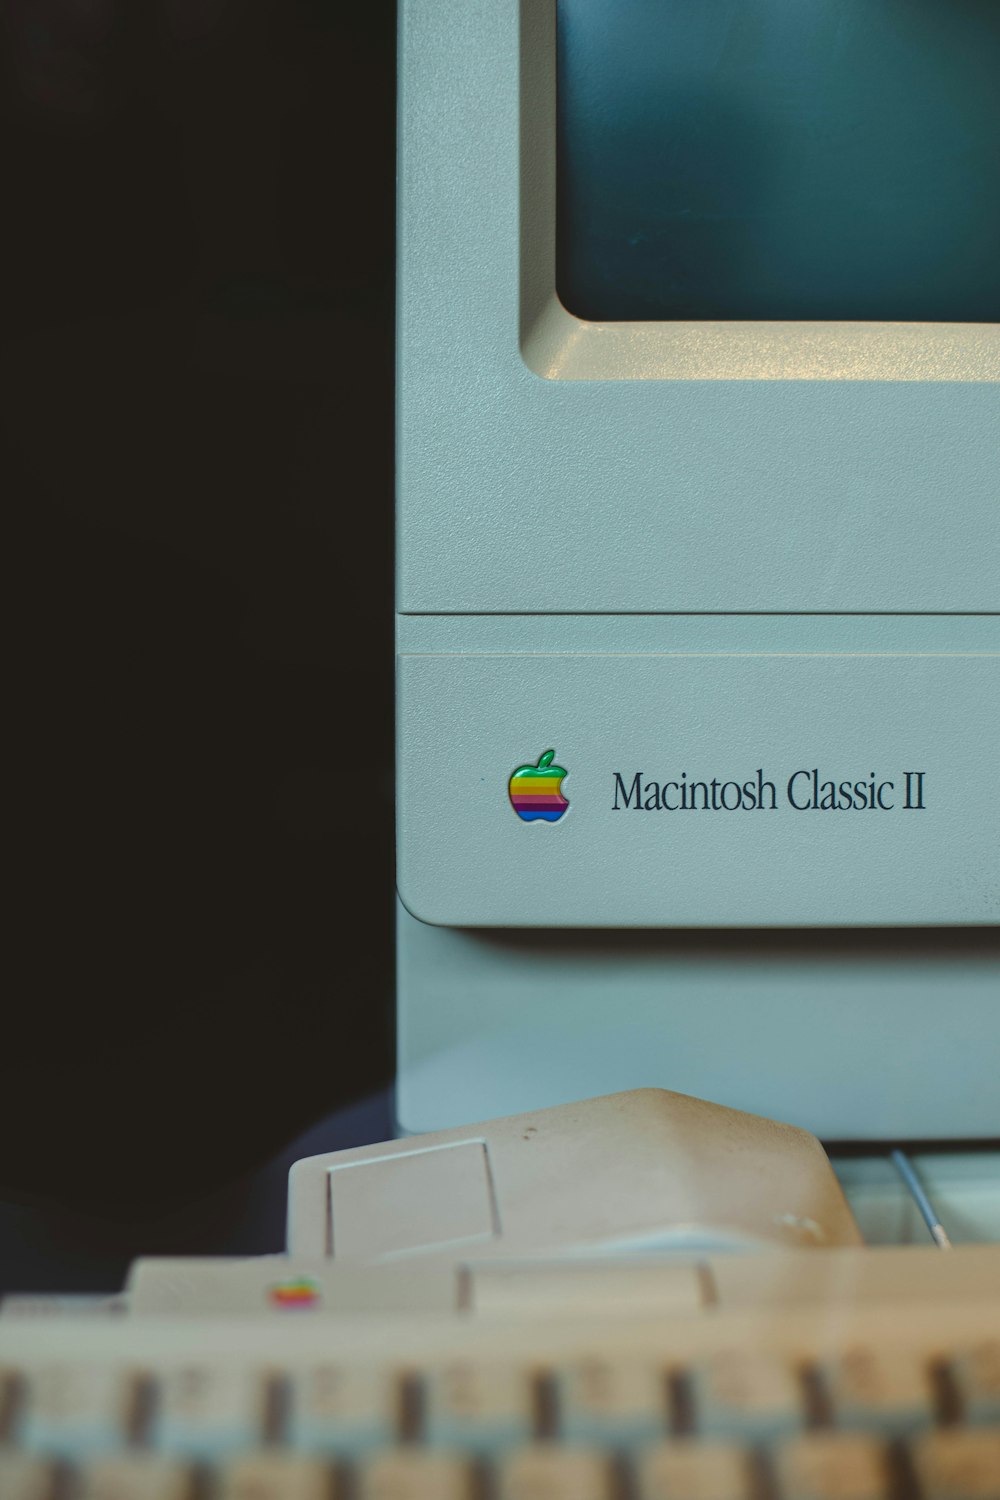 ホワイトの Apple Macintosh classic II モニター